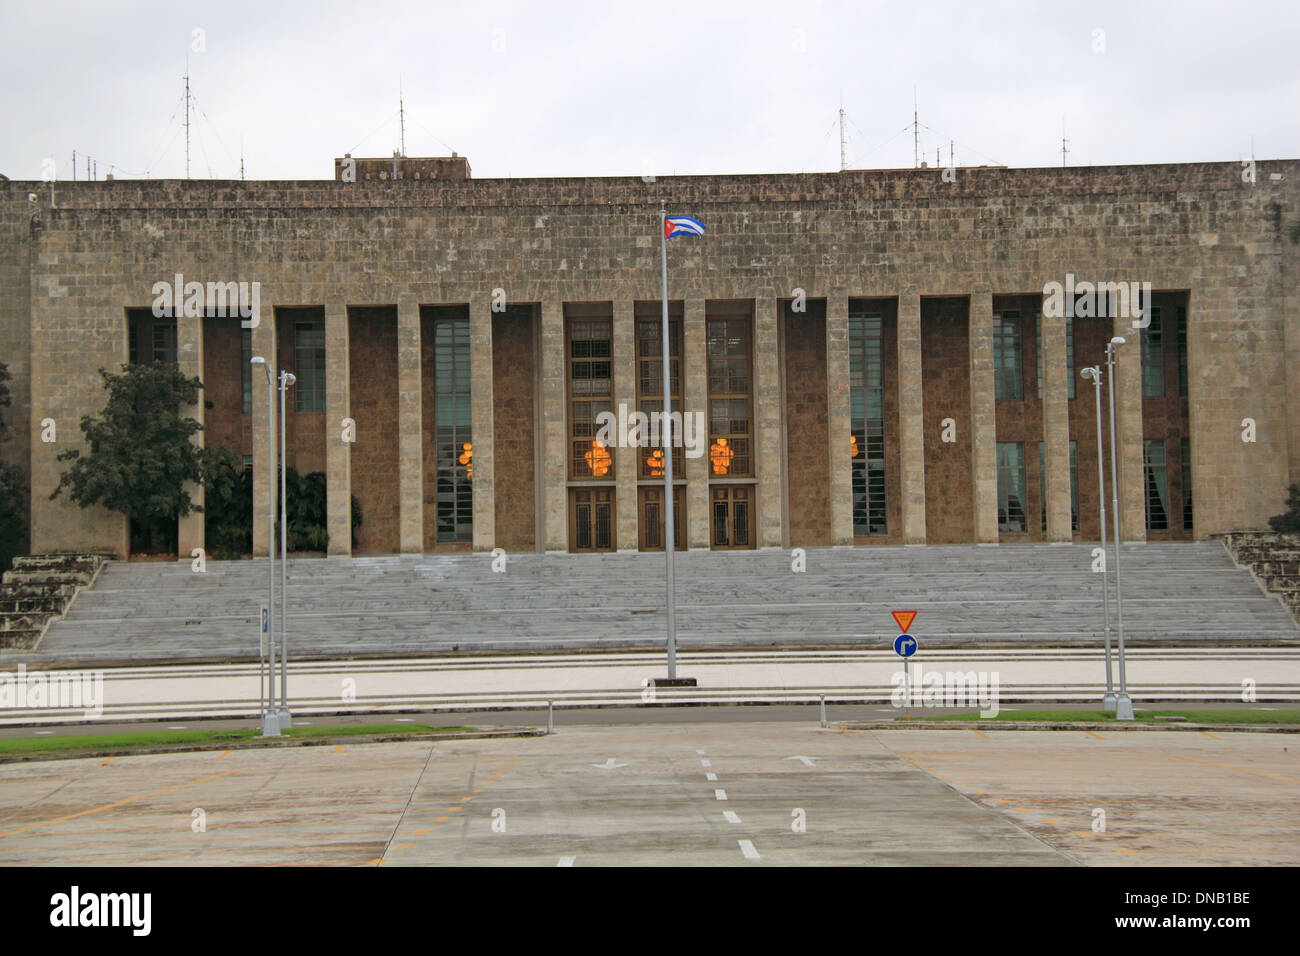 Comité Central del Partido Comunista de Cuba, Palacio de la Revolución, Vedado, La Havane, Cuba, mer des Caraïbes, l'Amérique centrale Banque D'Images